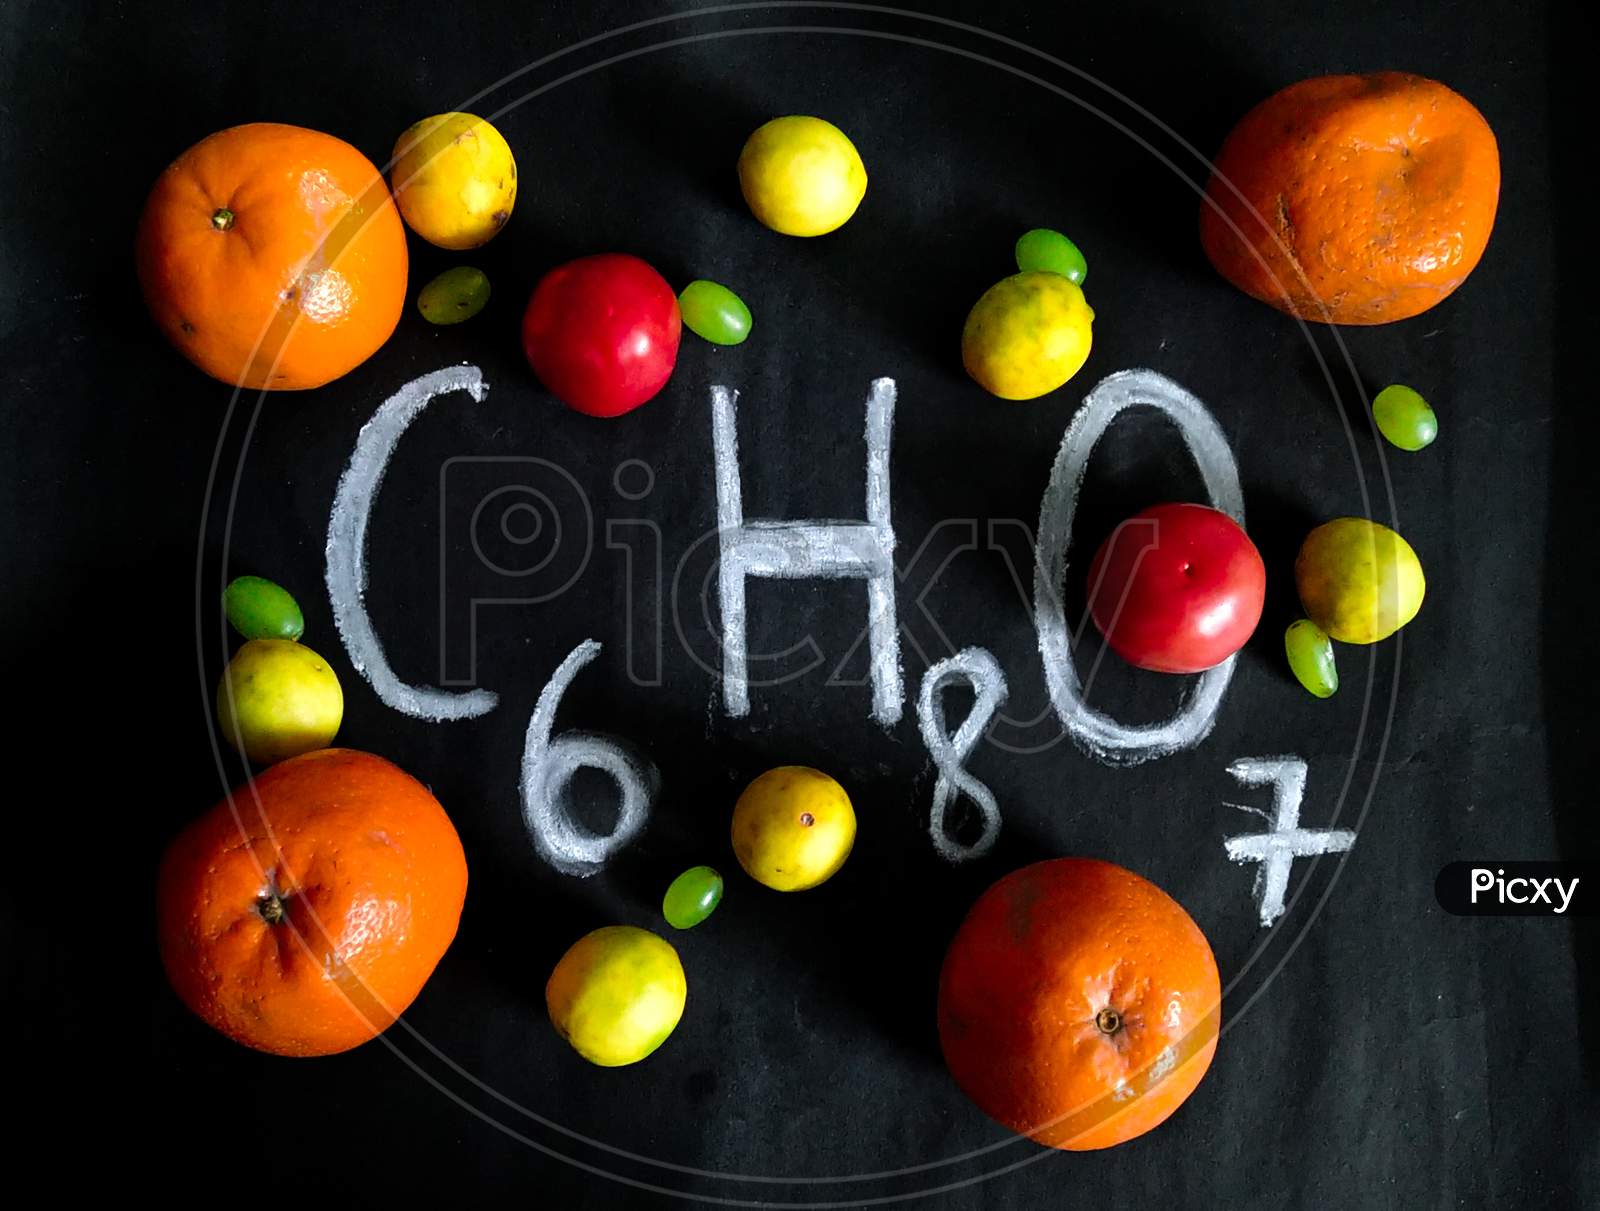 1 molecule of citric acid